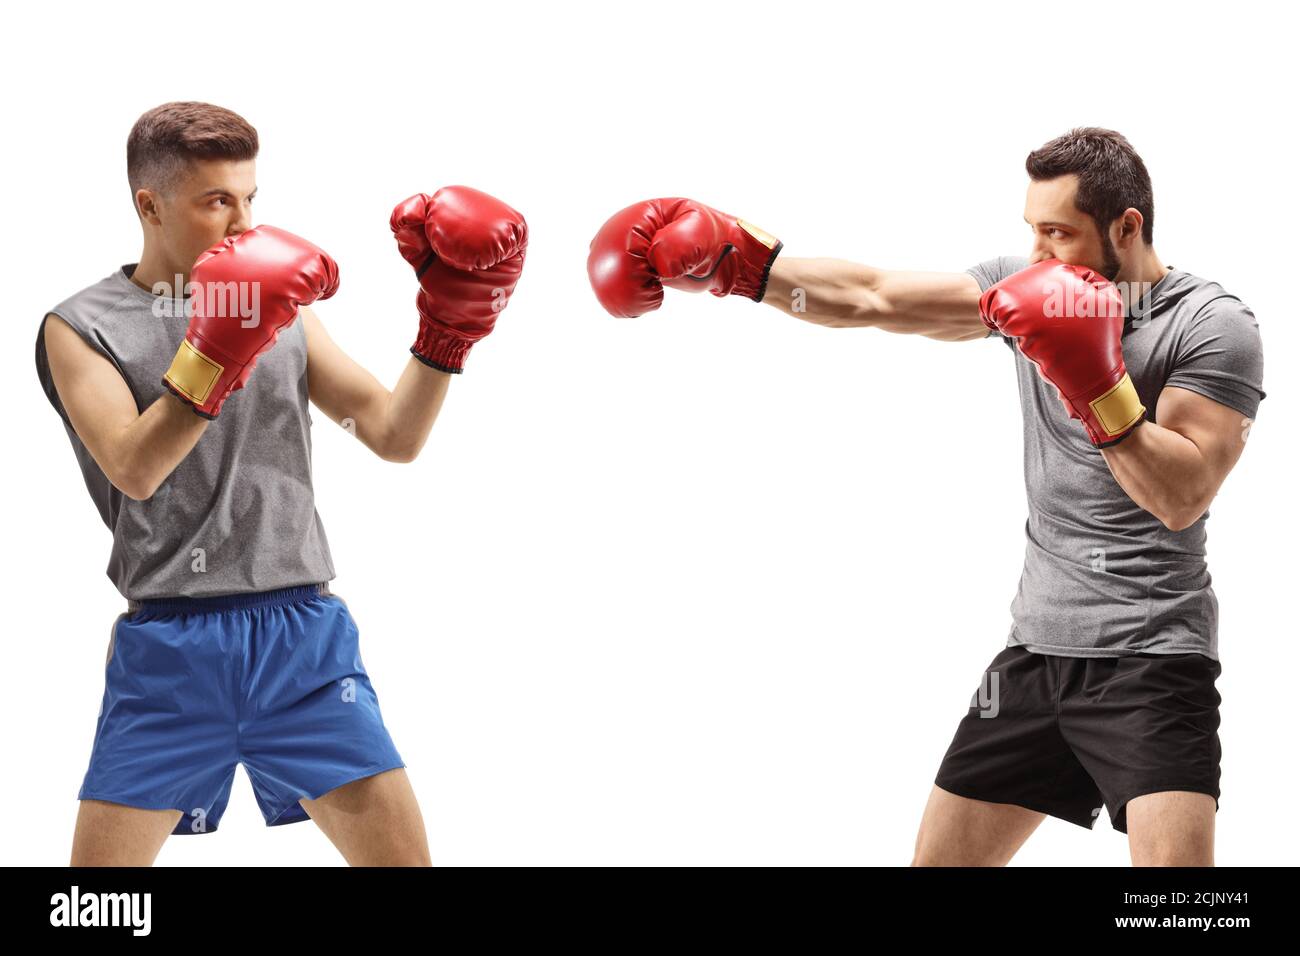 Les jeunes hommes se battent avec des gants de boxe isolés sur fond blanc Banque D'Images